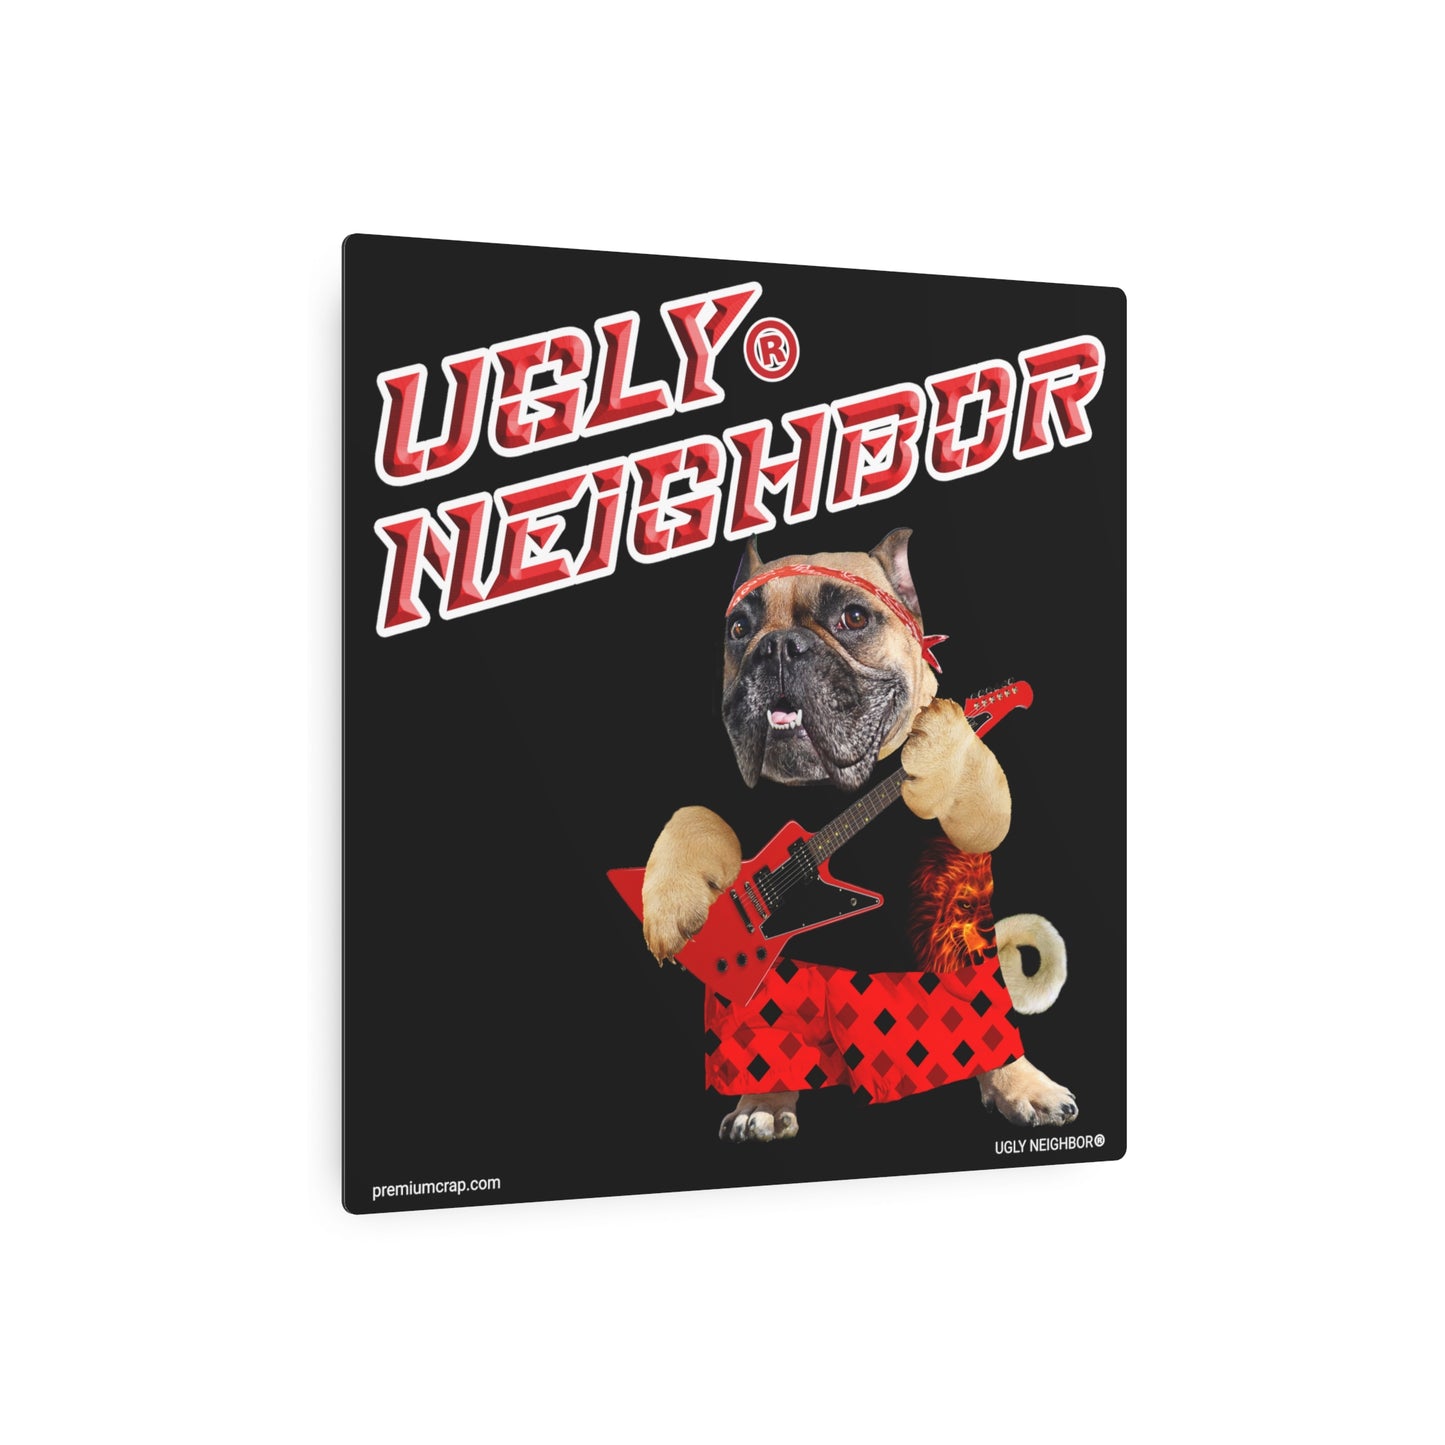 Ugly Neighbor II Metal Art Sign